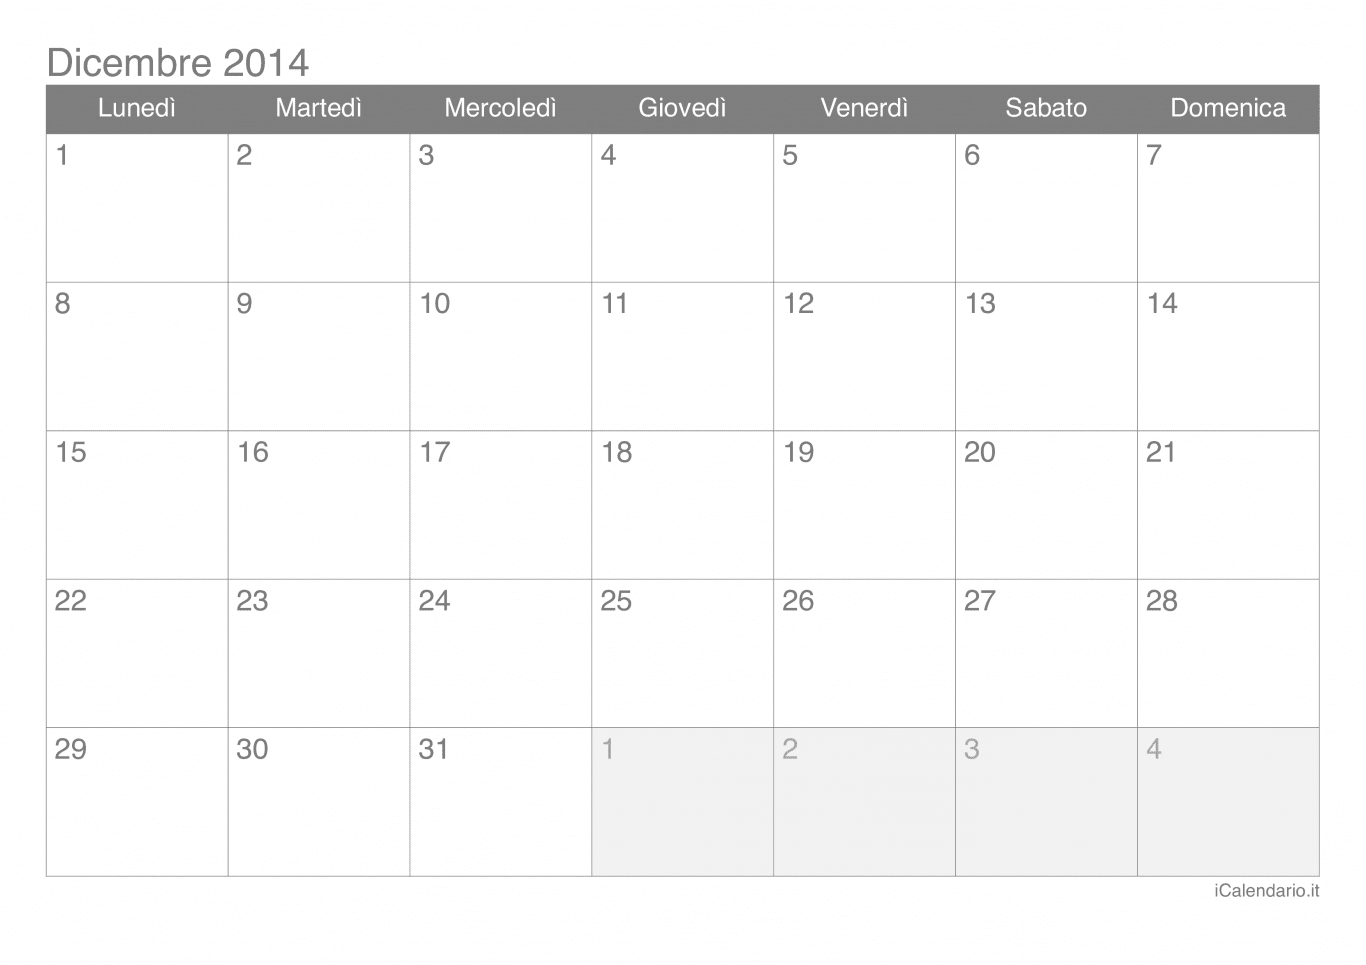 Calendario di dicembre 2014